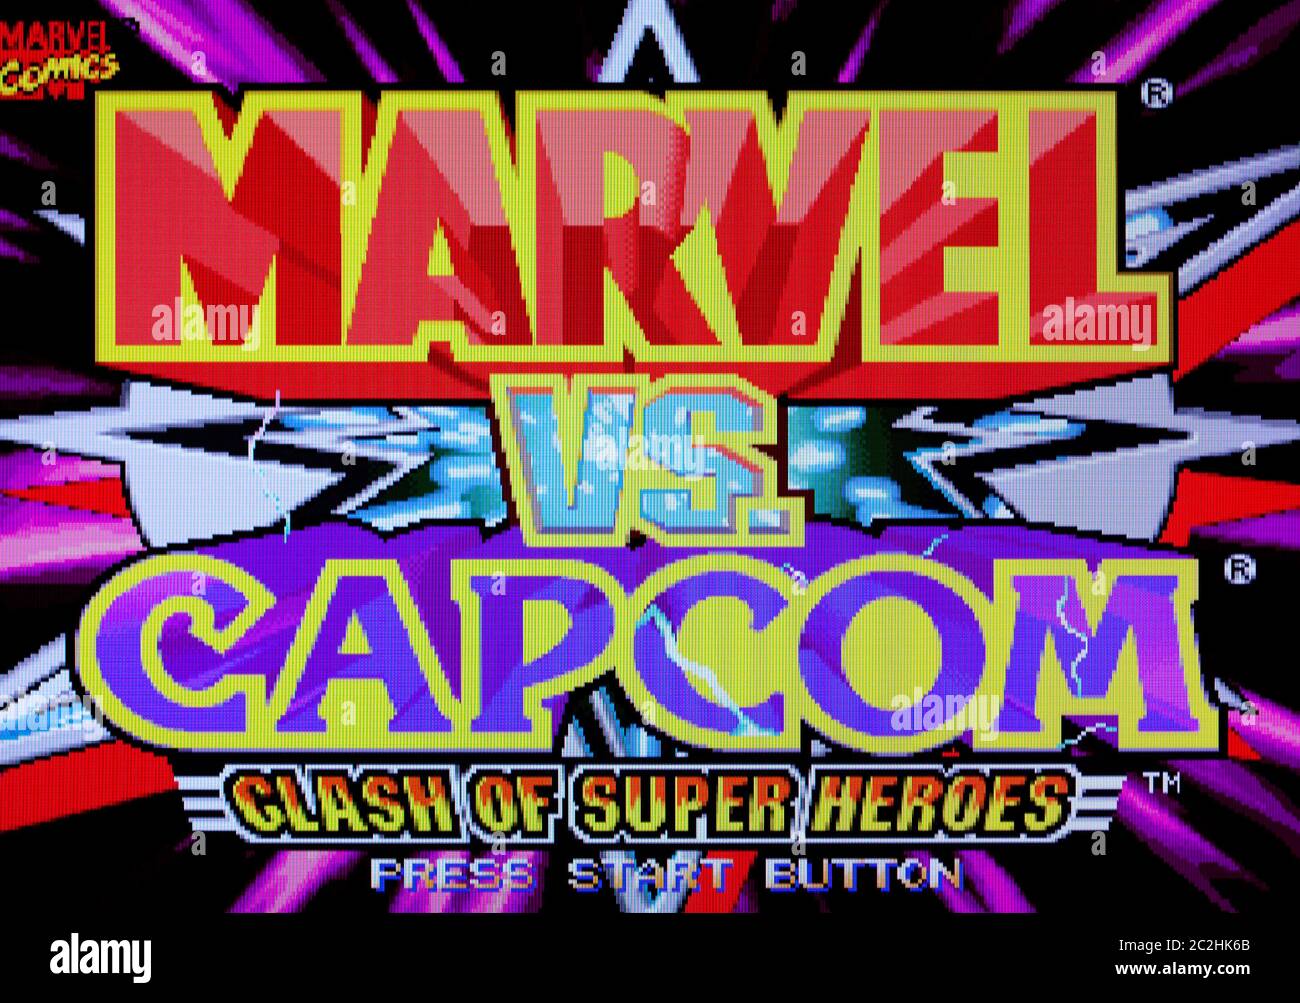 Marvel vs. Capcom - Clash of Super Heroes (USA) : Capcom : Free